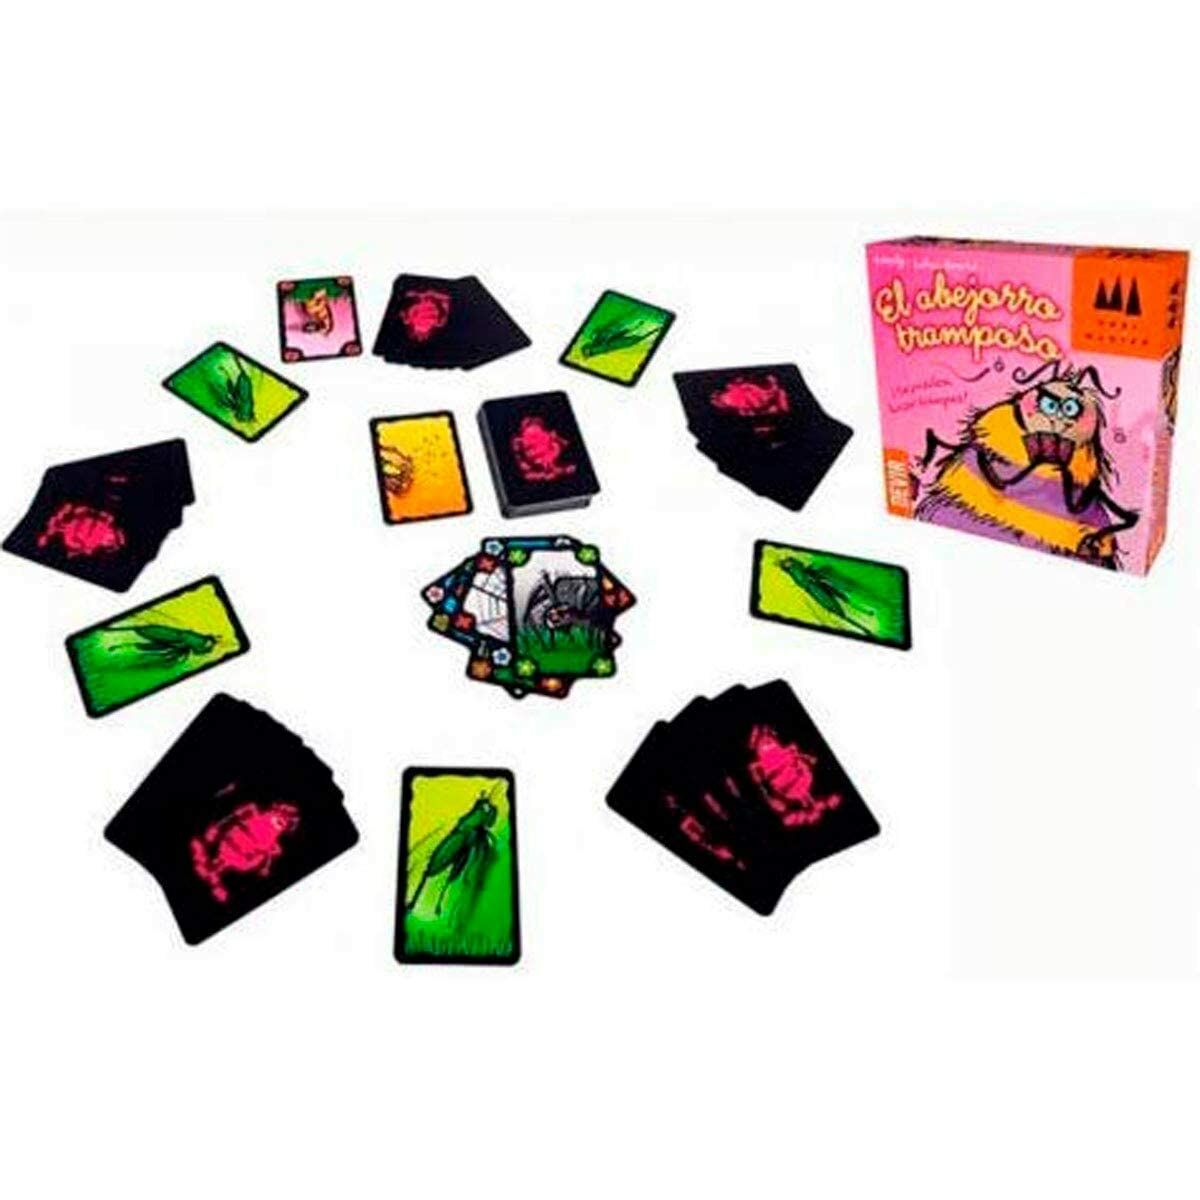 Kortspel Devir El Abejorro Tramposo-Leksaker och spel, Spel och tillbehör-Devir-peaceofhome.se